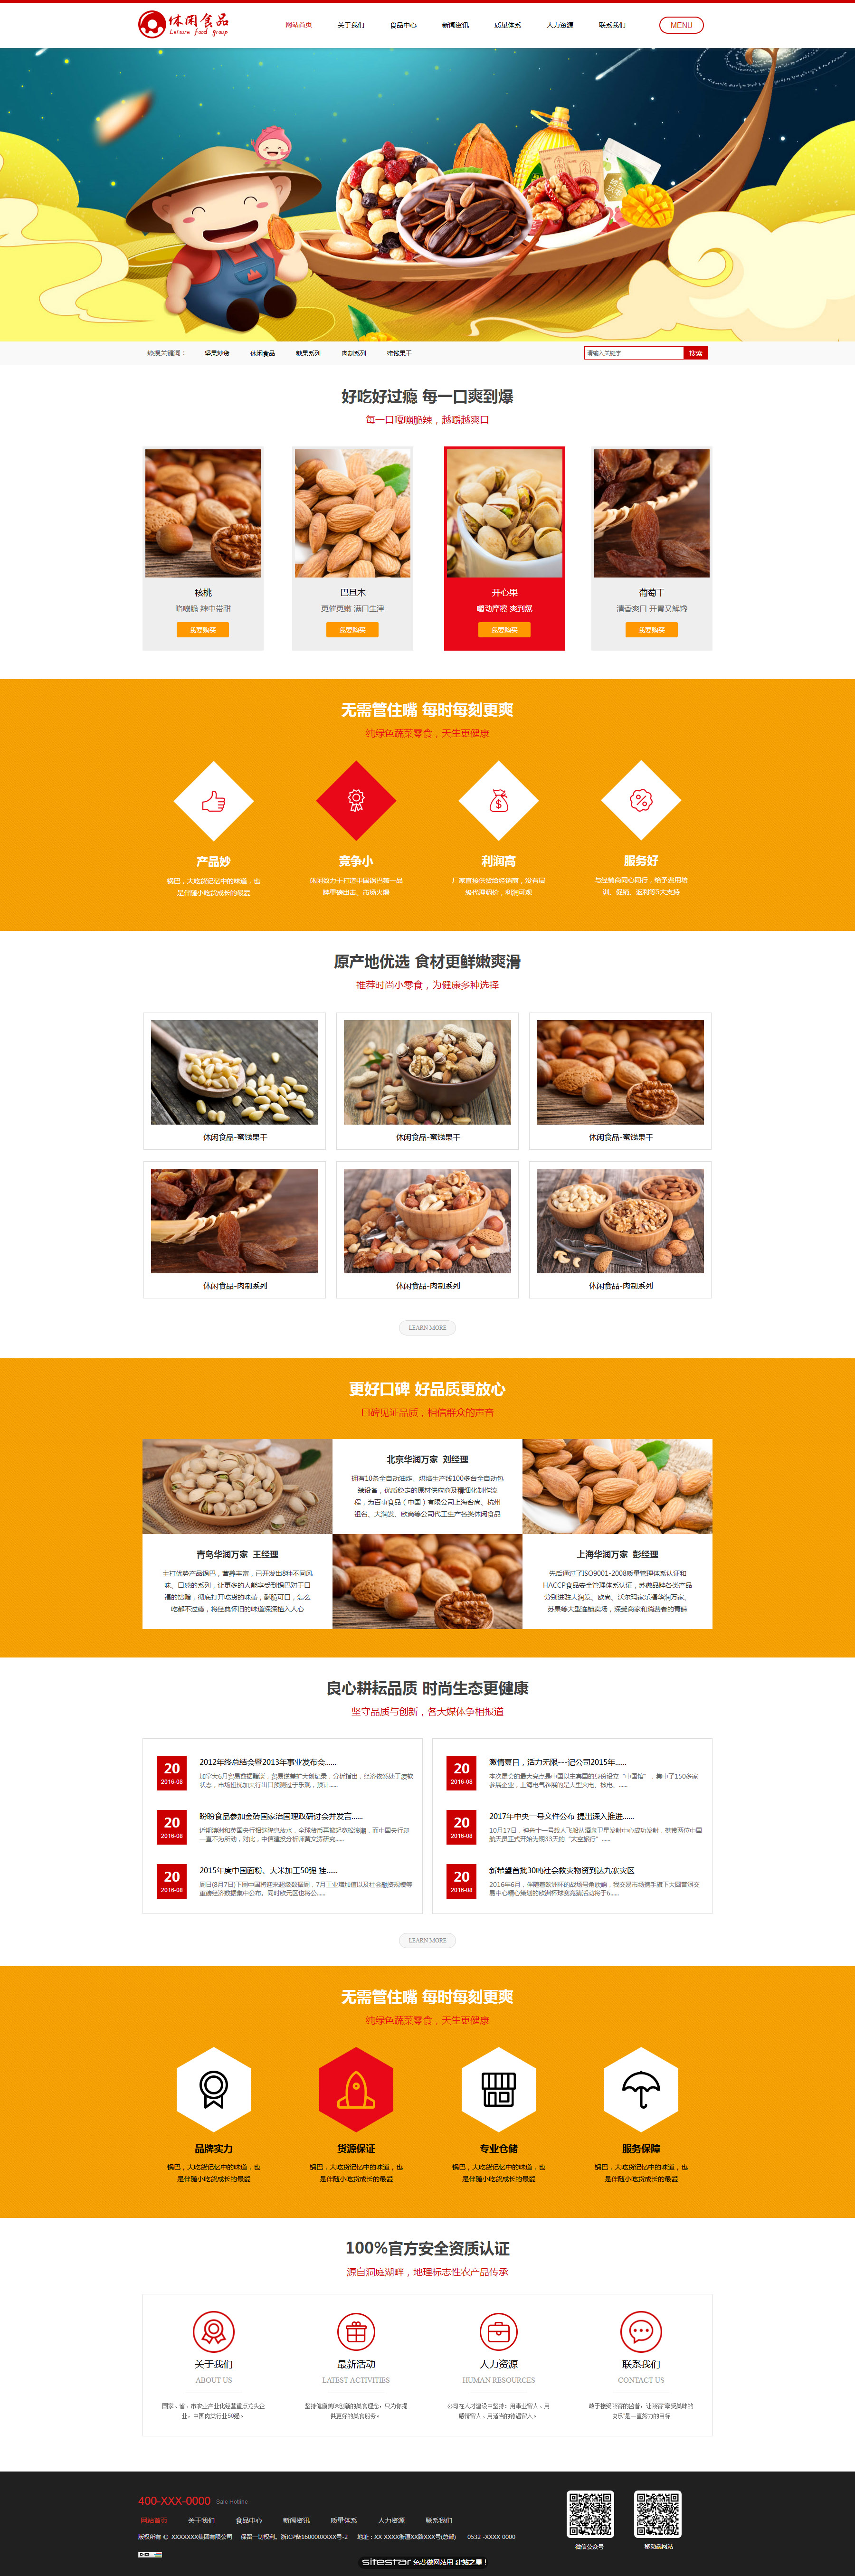 食品网站模板-food-442